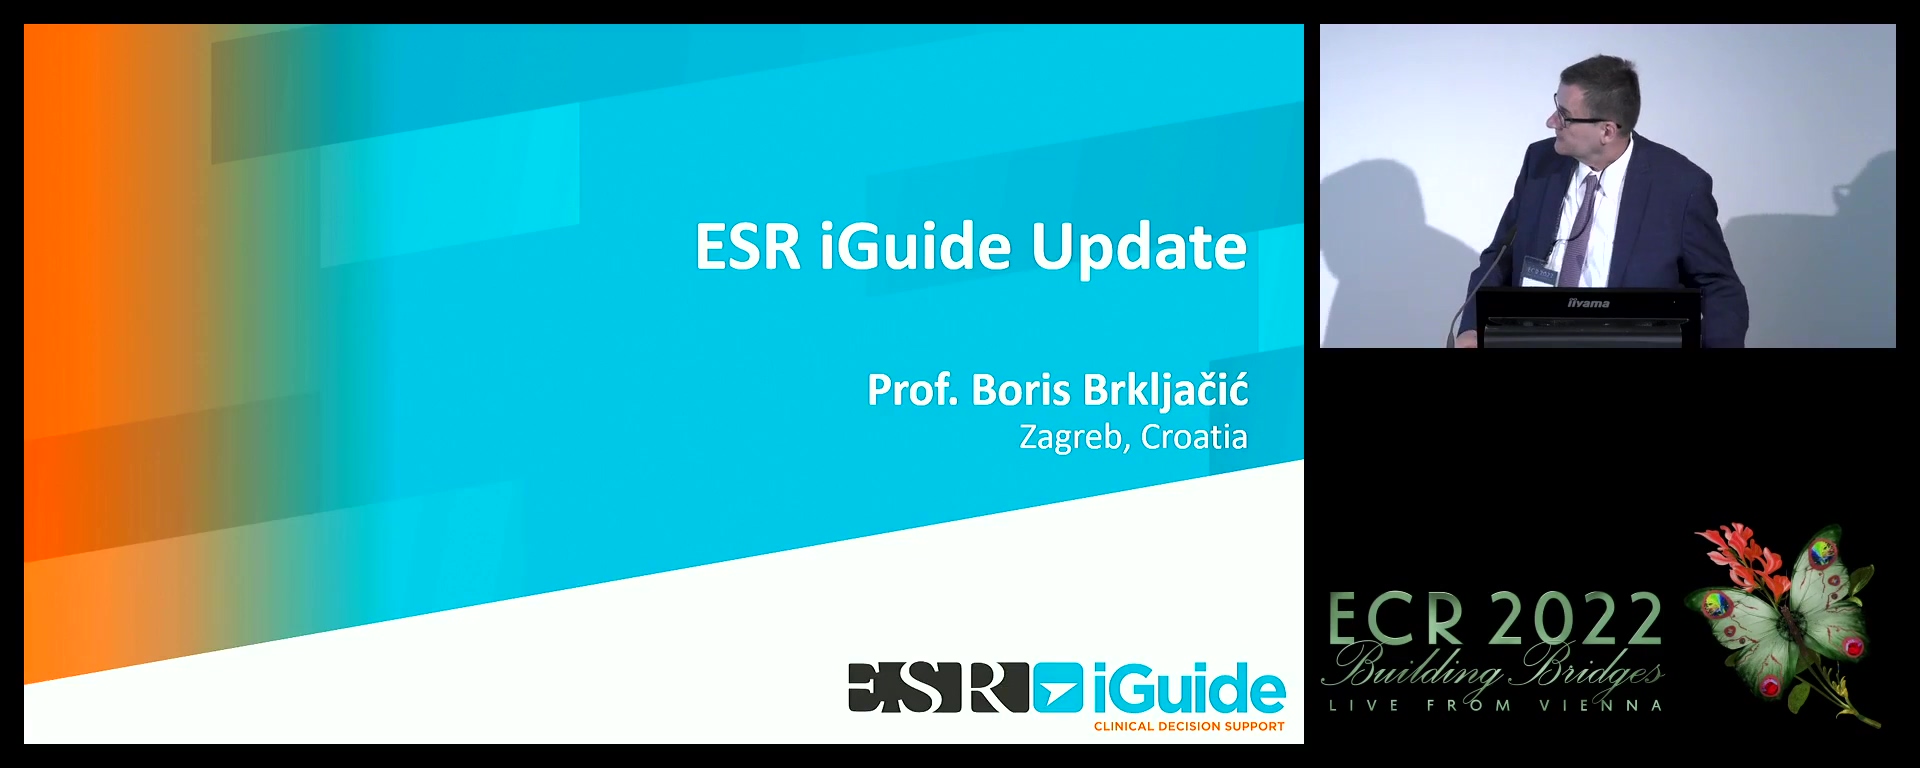 ESR iGuide update - Boris Brkljačić, Zagreb / HR